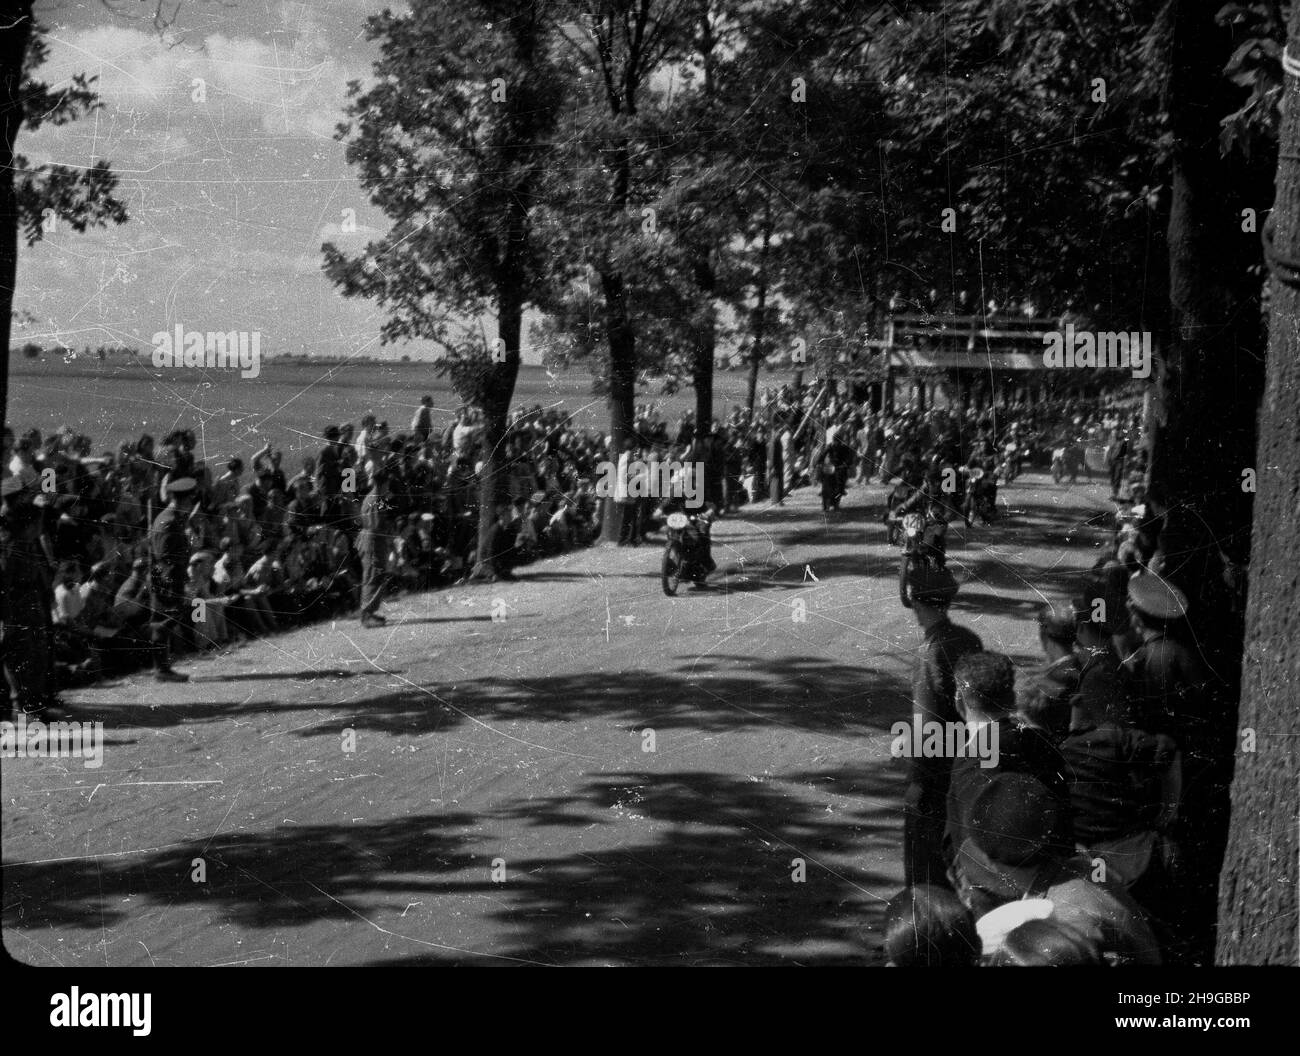 Poznañ, 1948-06-13. Ósme motocyklowe Grand Prix Polski, zorganizowane przez Moto-Klub Unia Poznañ, z udzia³em motocyklistów polskich i czechos³owackich. Pierwsze miejsce Czechos³owak Bubenicek, drugie Polak Jerzy Mieloch (Lechia Poznañ).  uu  PAP    Dok³adny dzieñ wydarzenia nieustalony.      Poznan, June 13, 1948. The 8th Poland's Motorcycle Grand Prix, organized by the Moto-Klub Unia Poznan, with Polish and Czechoslovak motorcyclists taking part. The winner was Czechoslovakia's Bubenicek, runner up was Pole Jerzy Mieloch (Lechia Poznan).   uu  PAP Stock Photo